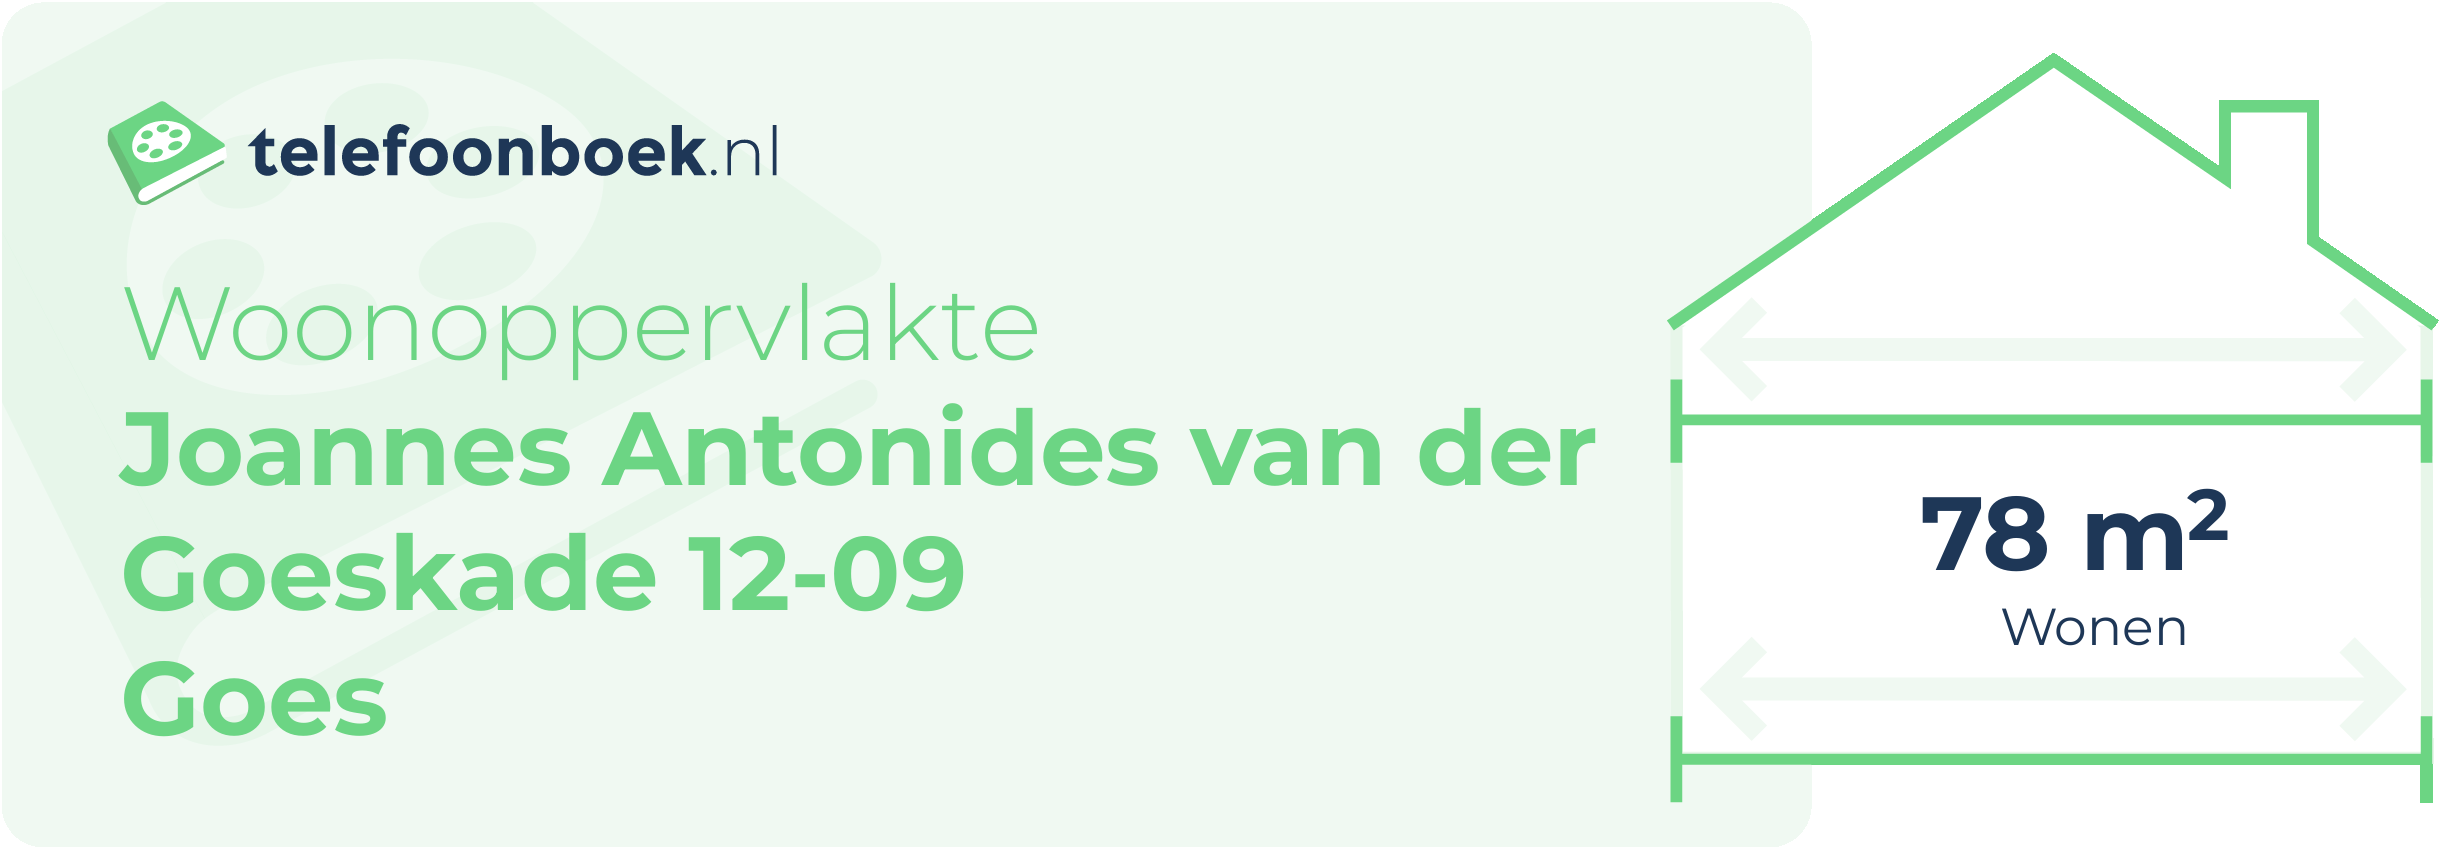 Woonoppervlakte Joannes Antonides Van Der Goeskade 12-09 Goes